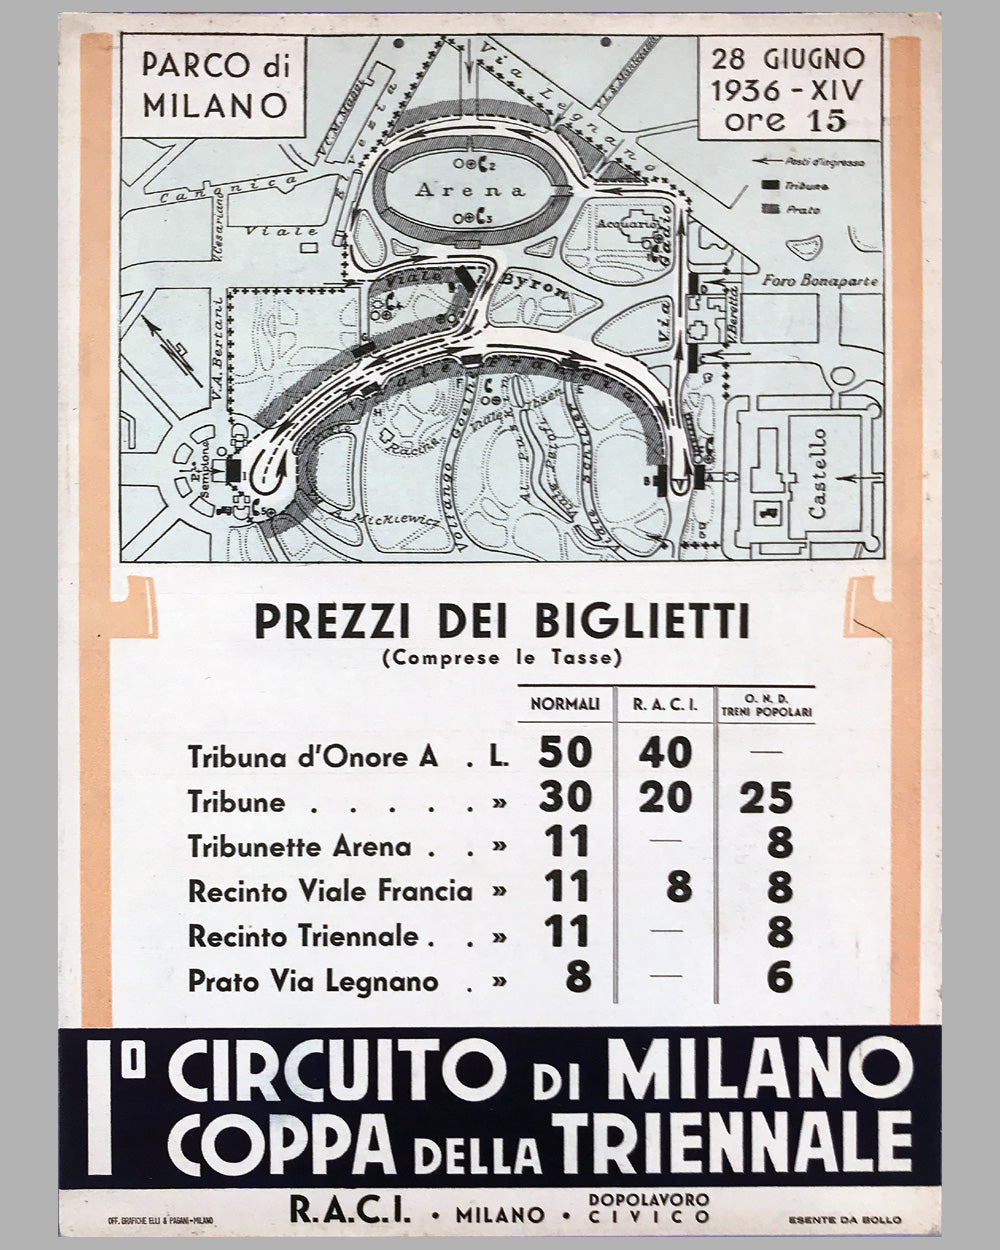 1st Circuito di Milano - Coppa Della Triennale 1936 original poster